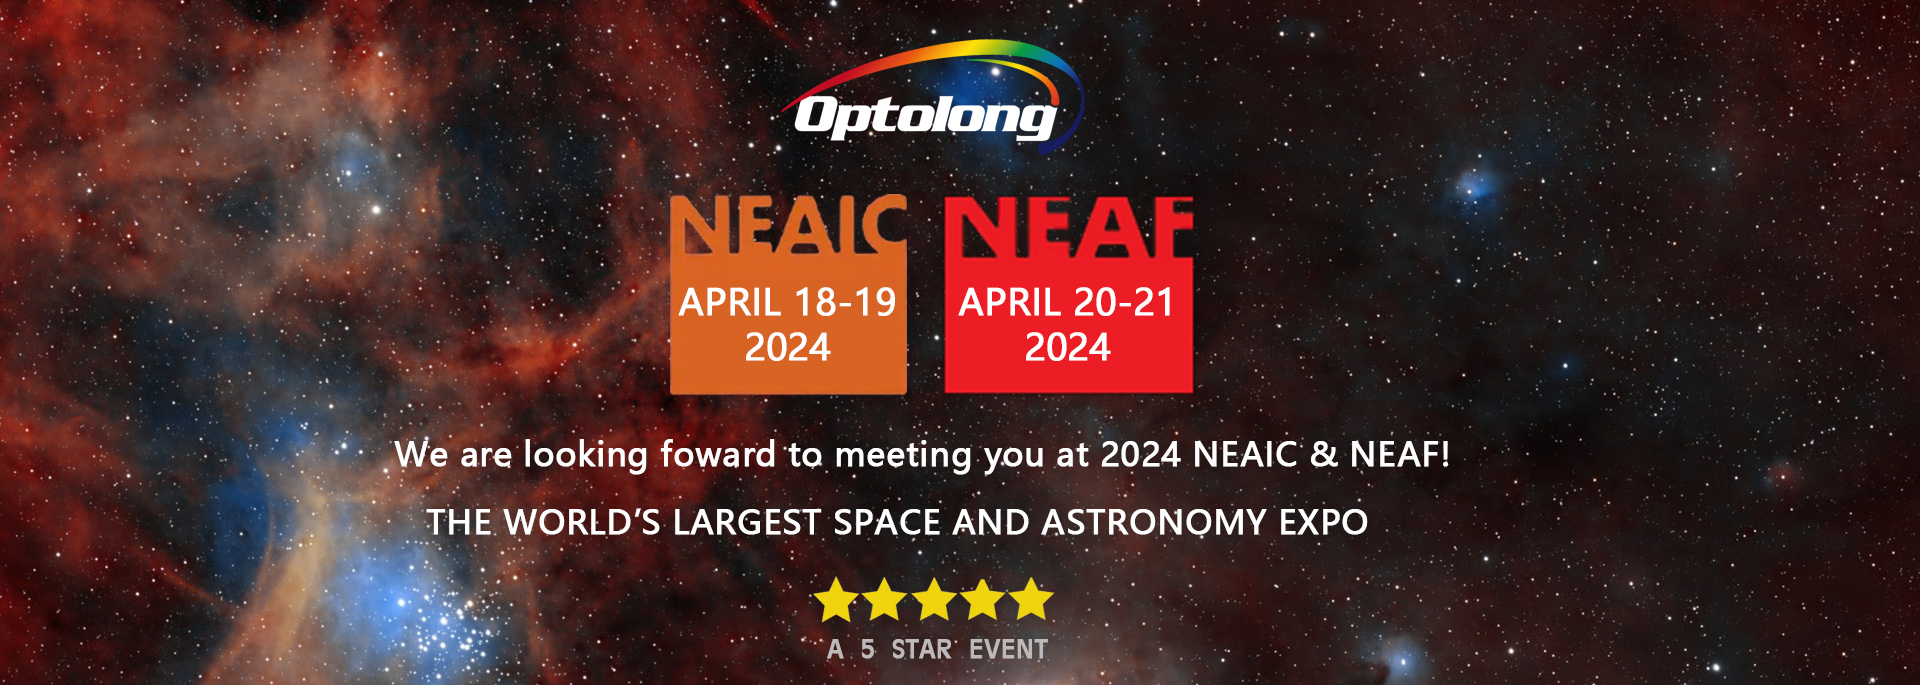 【展会预告】2024 NEAIC&NEAF